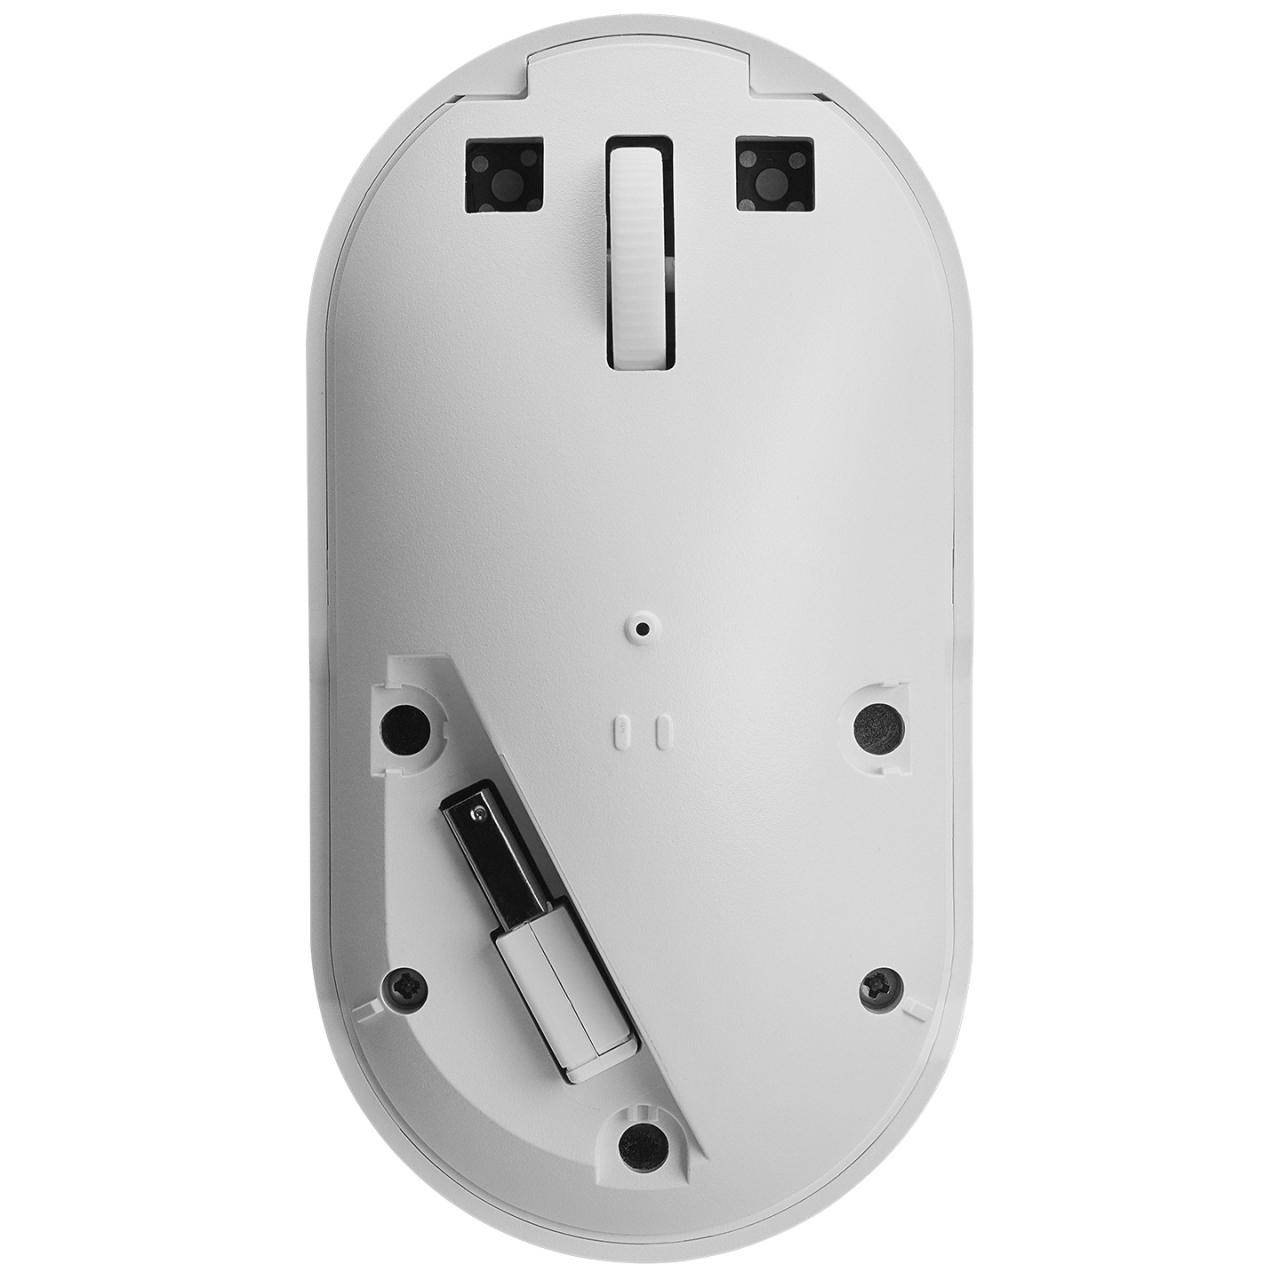 EVEREST SMW-399 Şarj Edilebilir Süper Sessiz 1600 DPI Kablosuz Beyaz Mouse